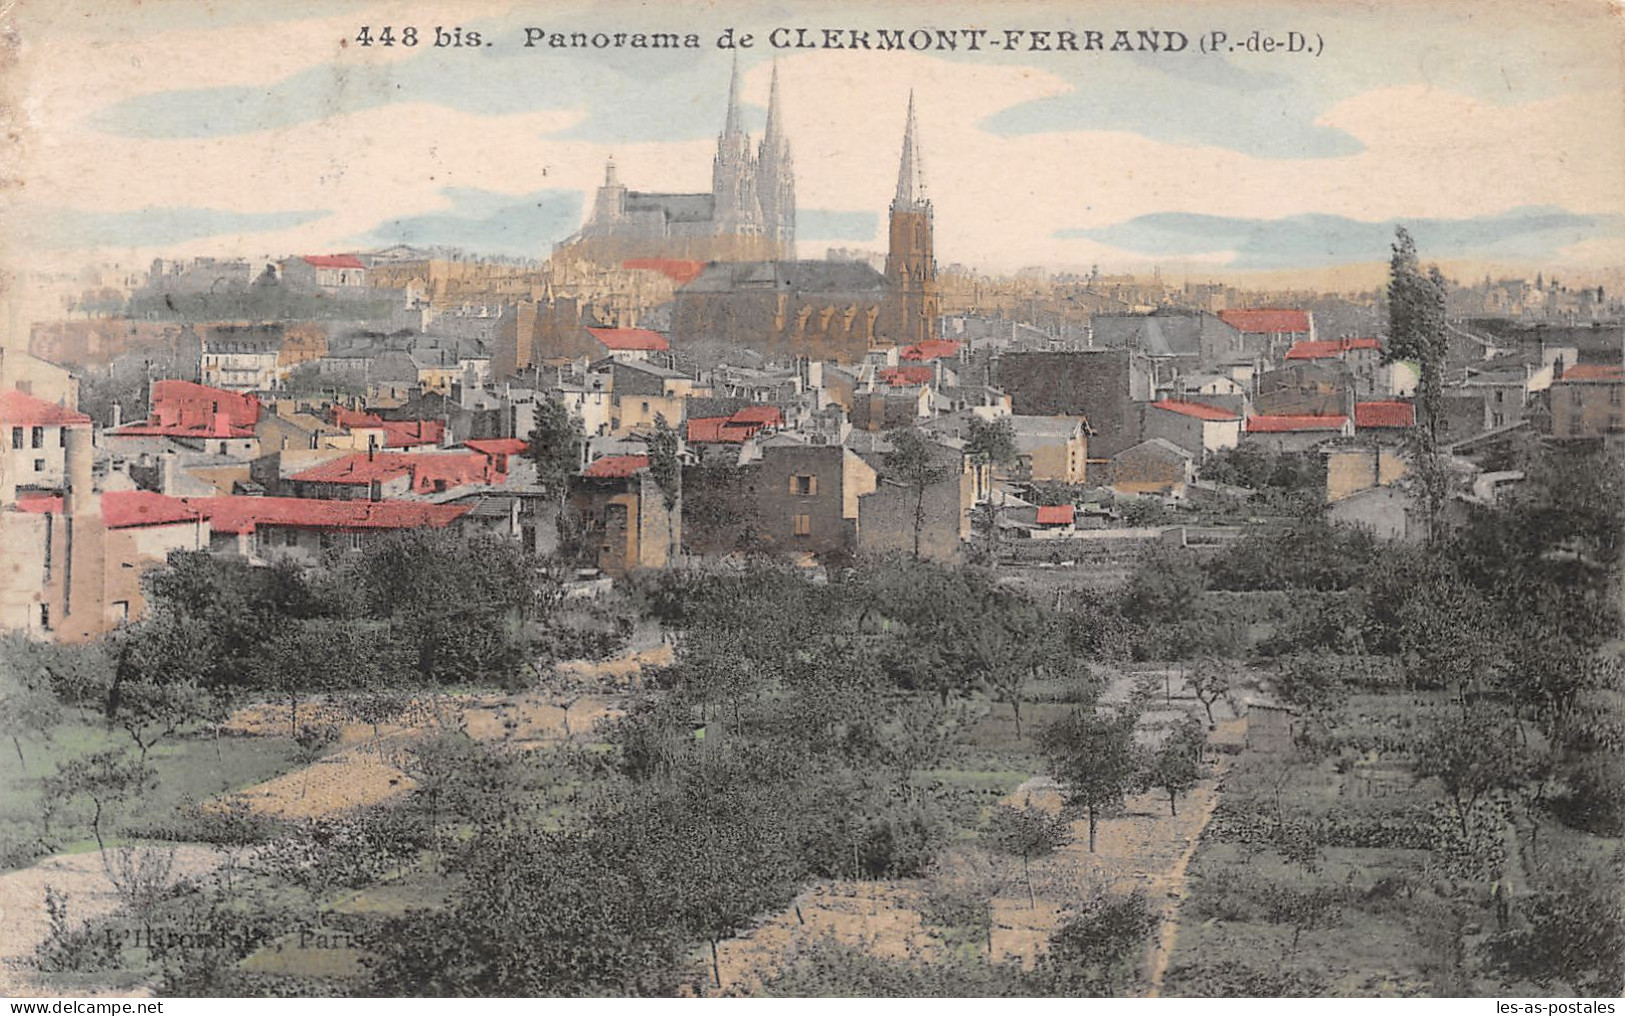 63 CLERMONT FERRAND - Clermont Ferrand